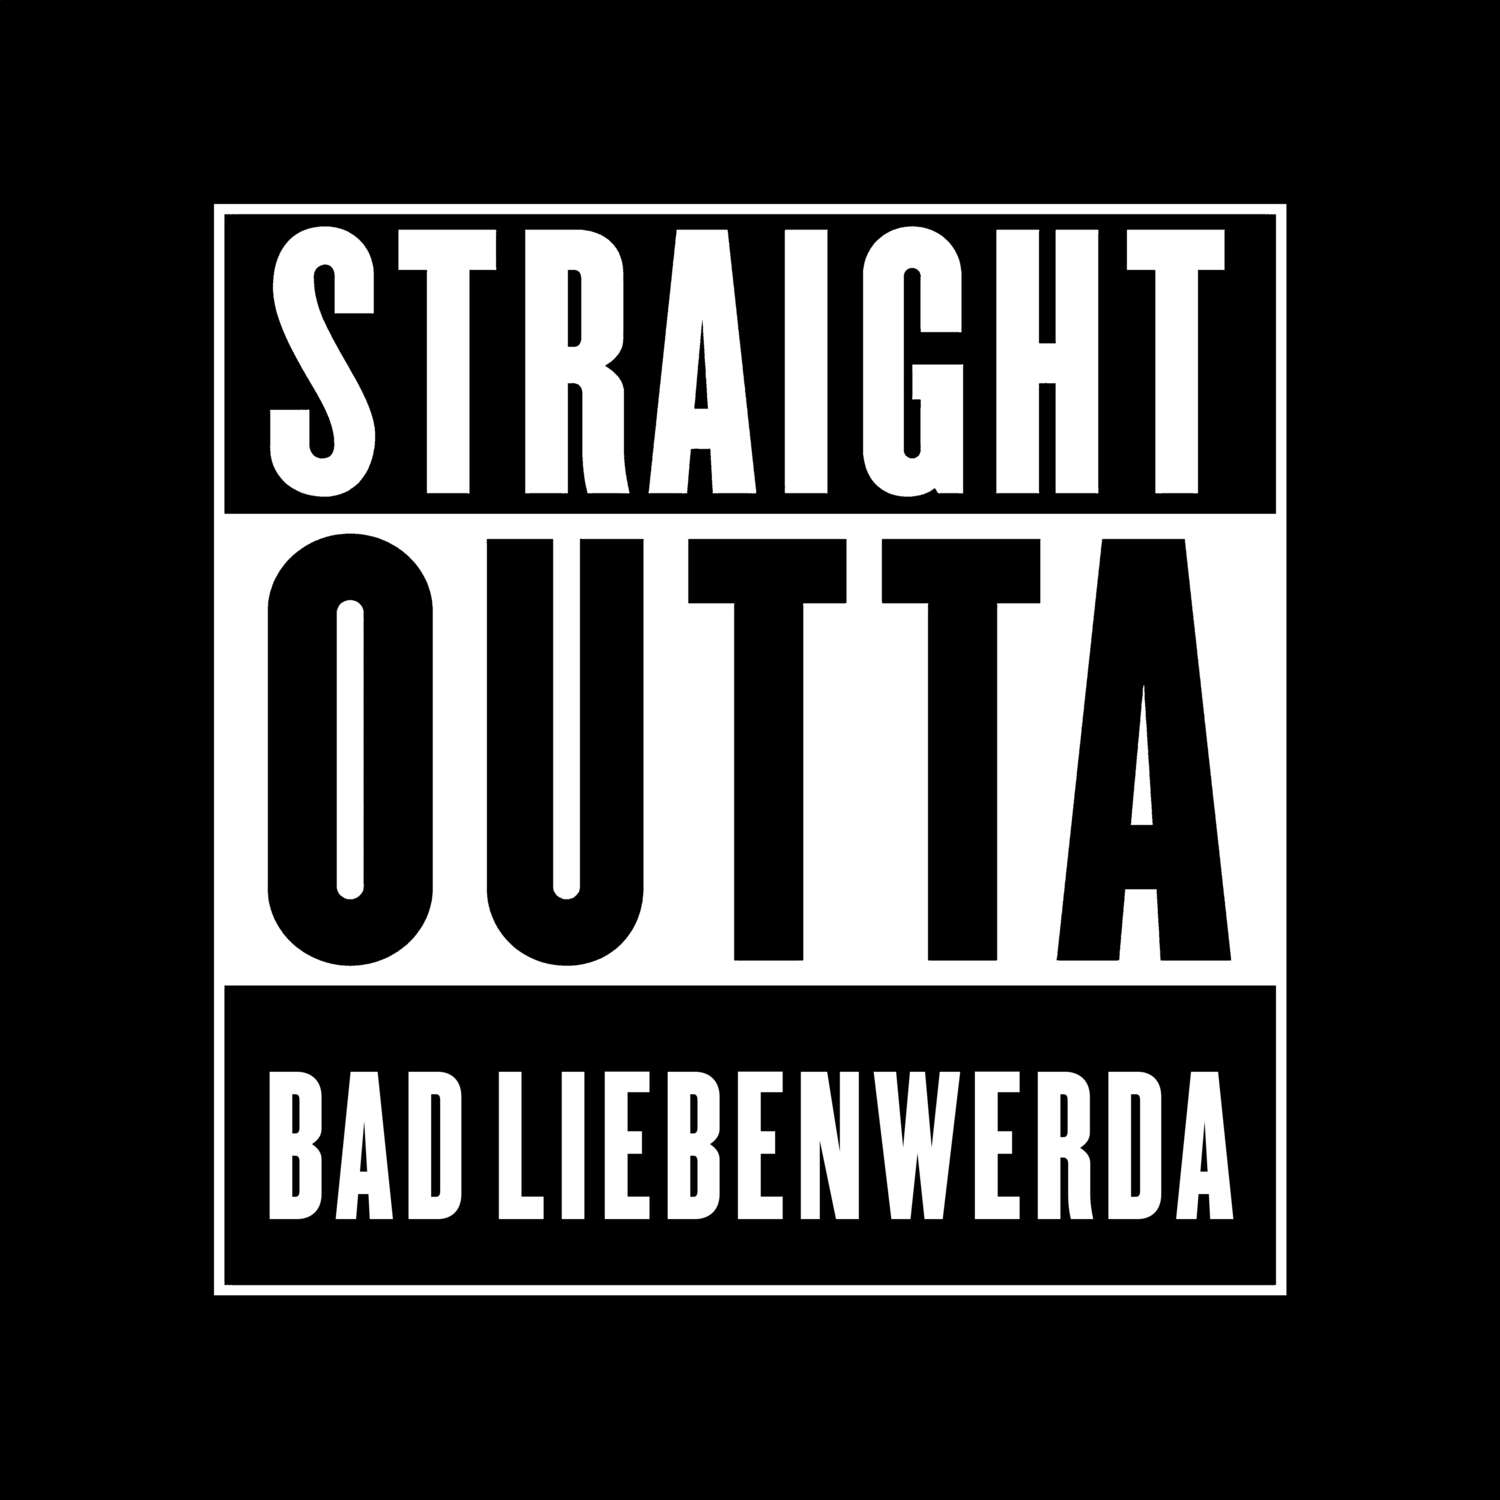 Bad Liebenwerda T-Shirt »Straight Outta«